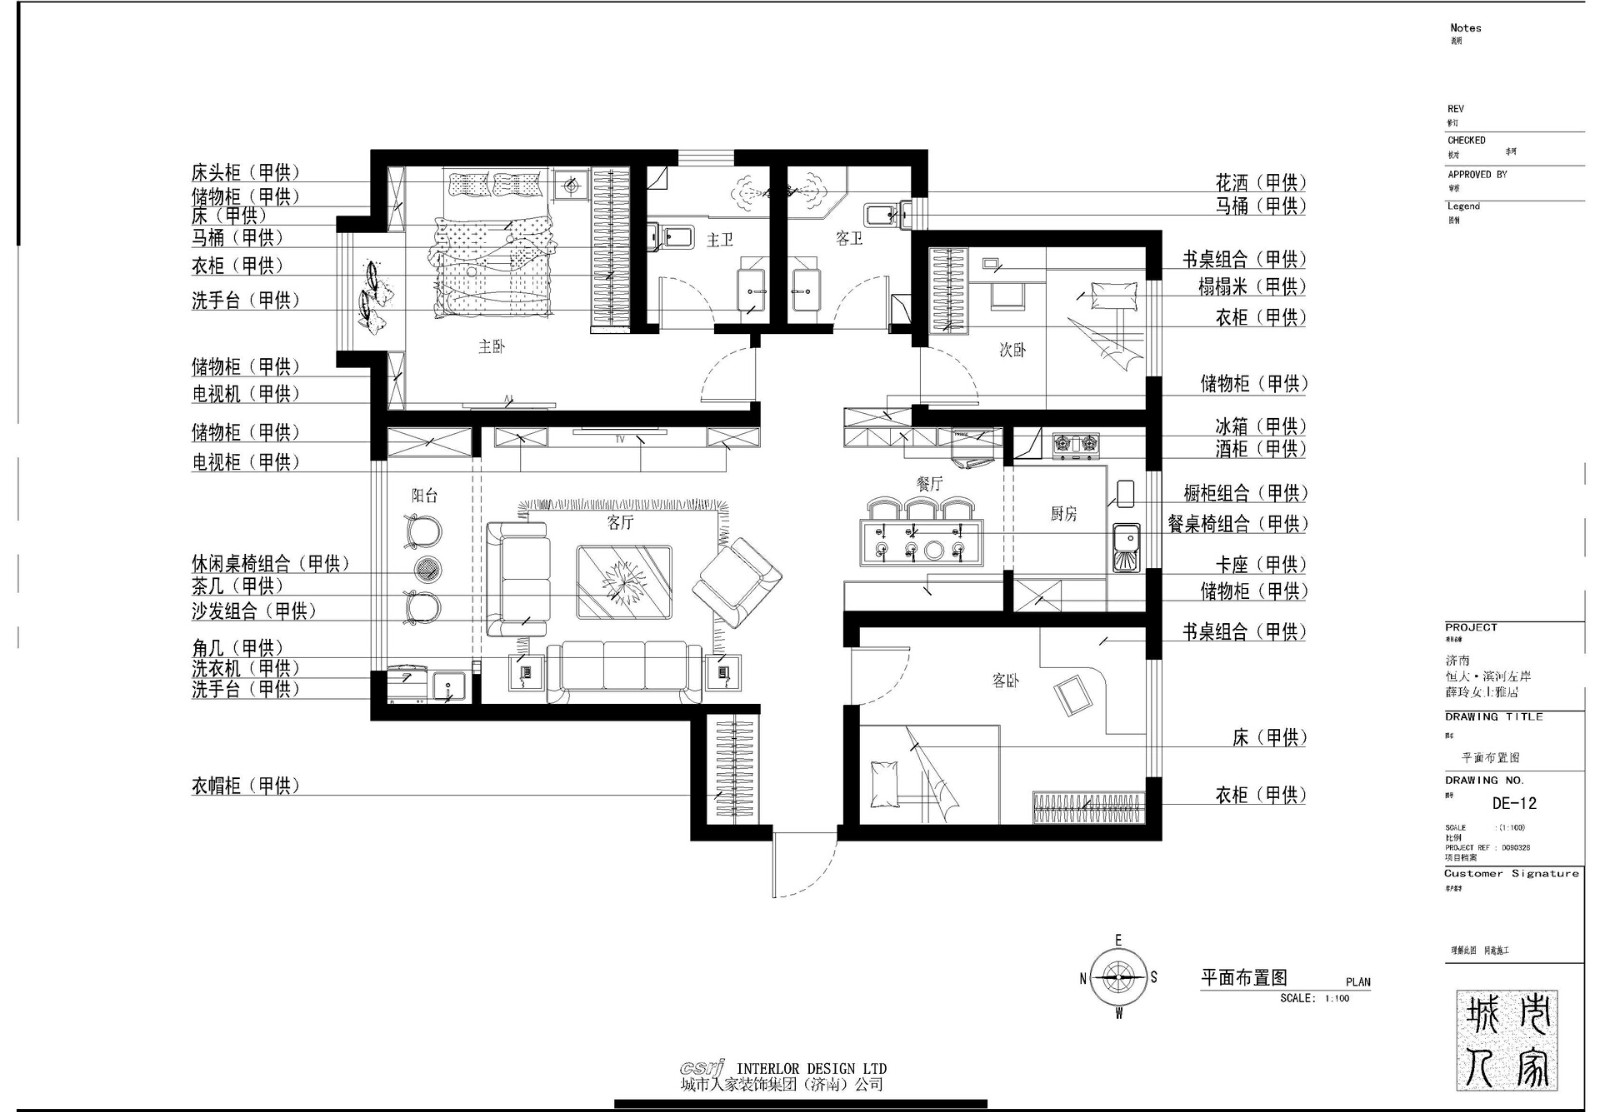 98现代三房装修效果图,极简装修案例效果图-美广网(图1)